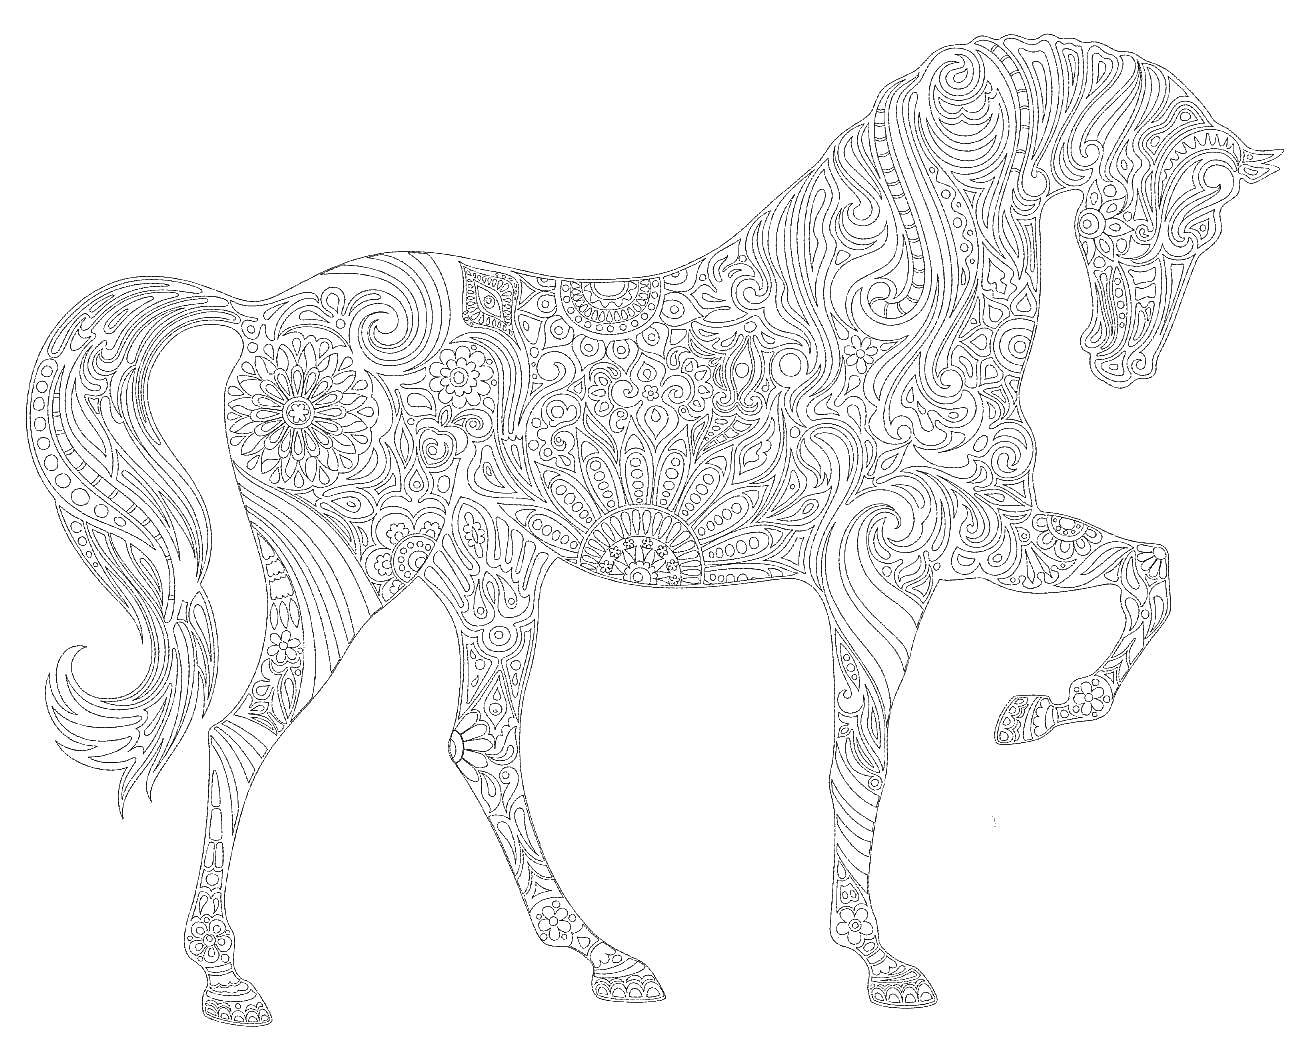 Лошадь антистресс с узорами, включая цветы и абстрактные элементы